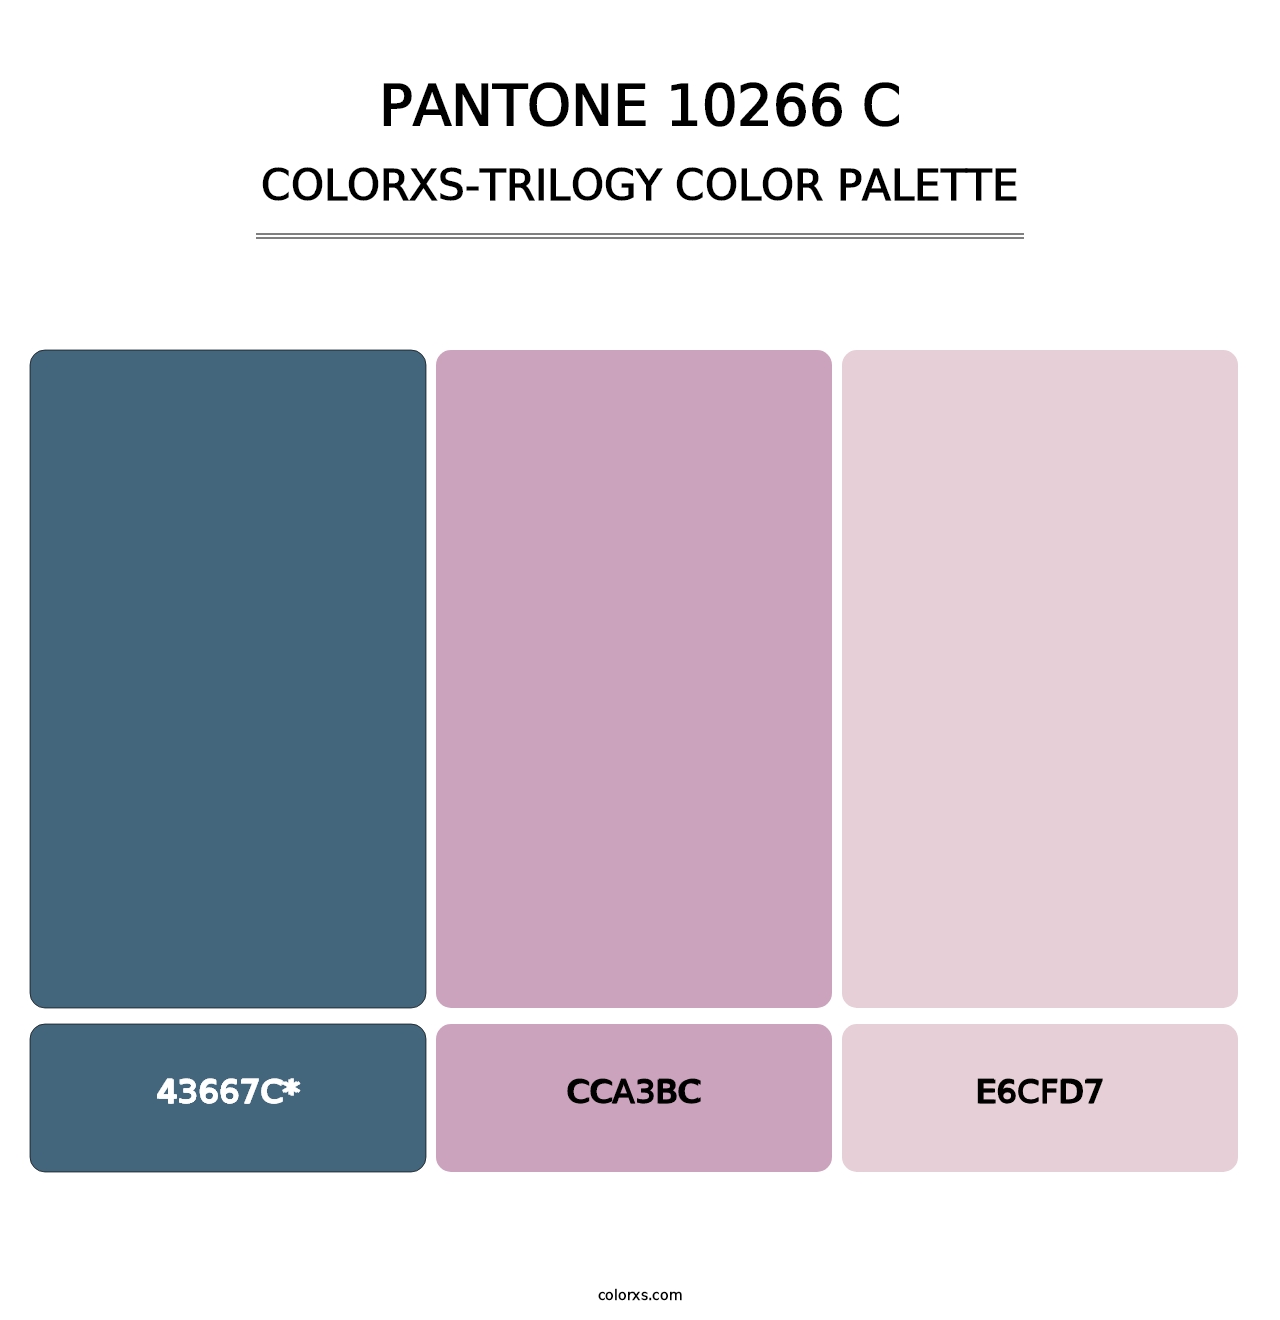 PANTONE 10266 C - Colorxs Trilogy Palette